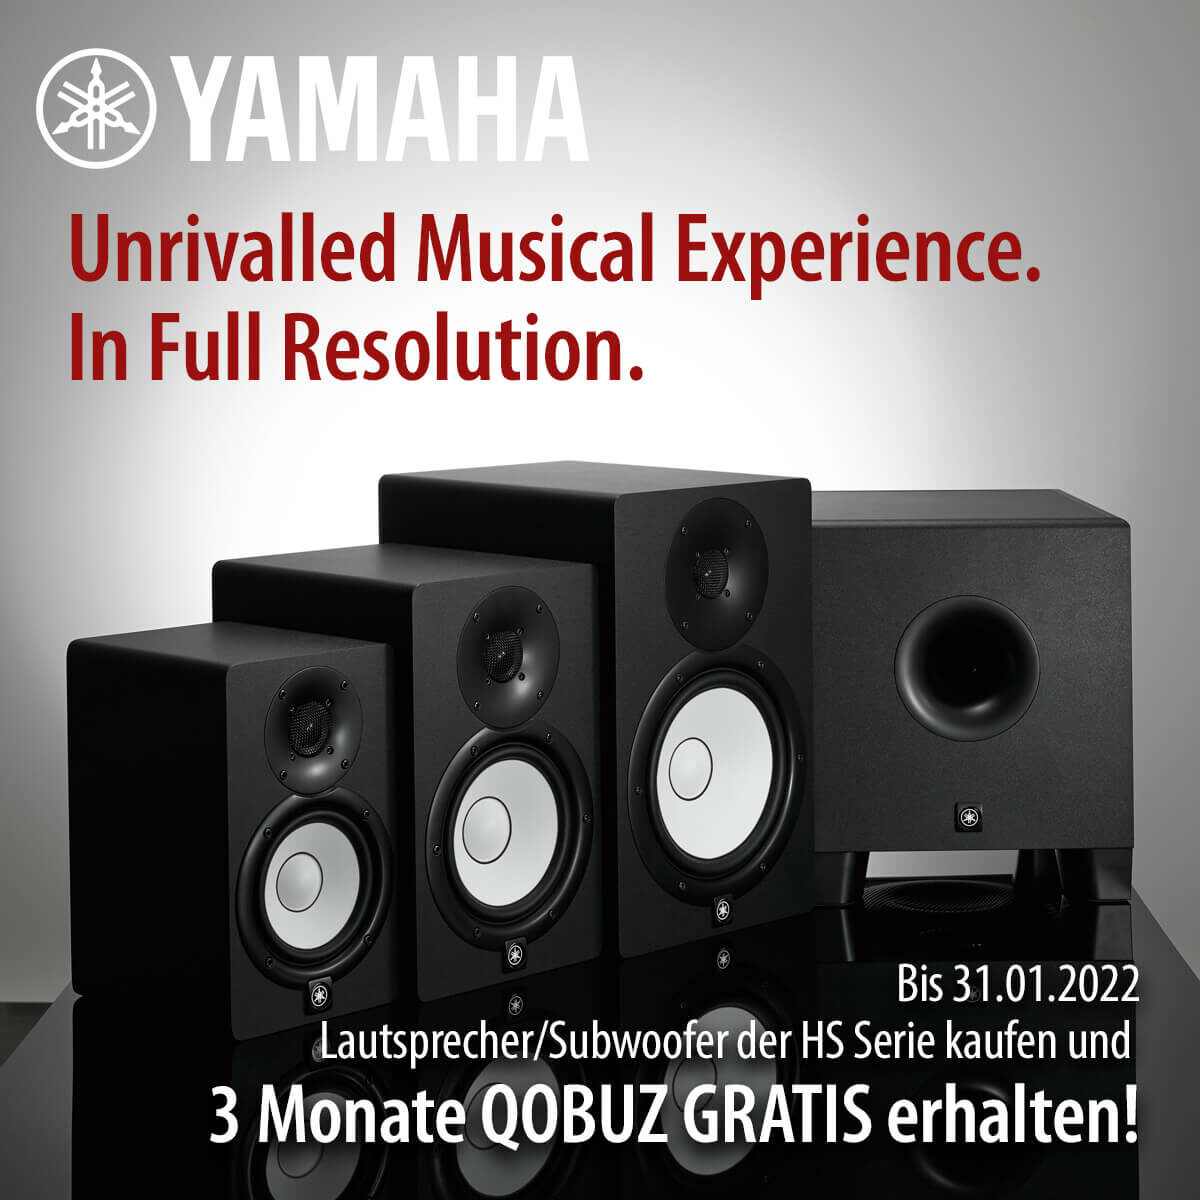 HS Serie Speaker kaufen + 3 Monate QOBUZ gratis erhalten!